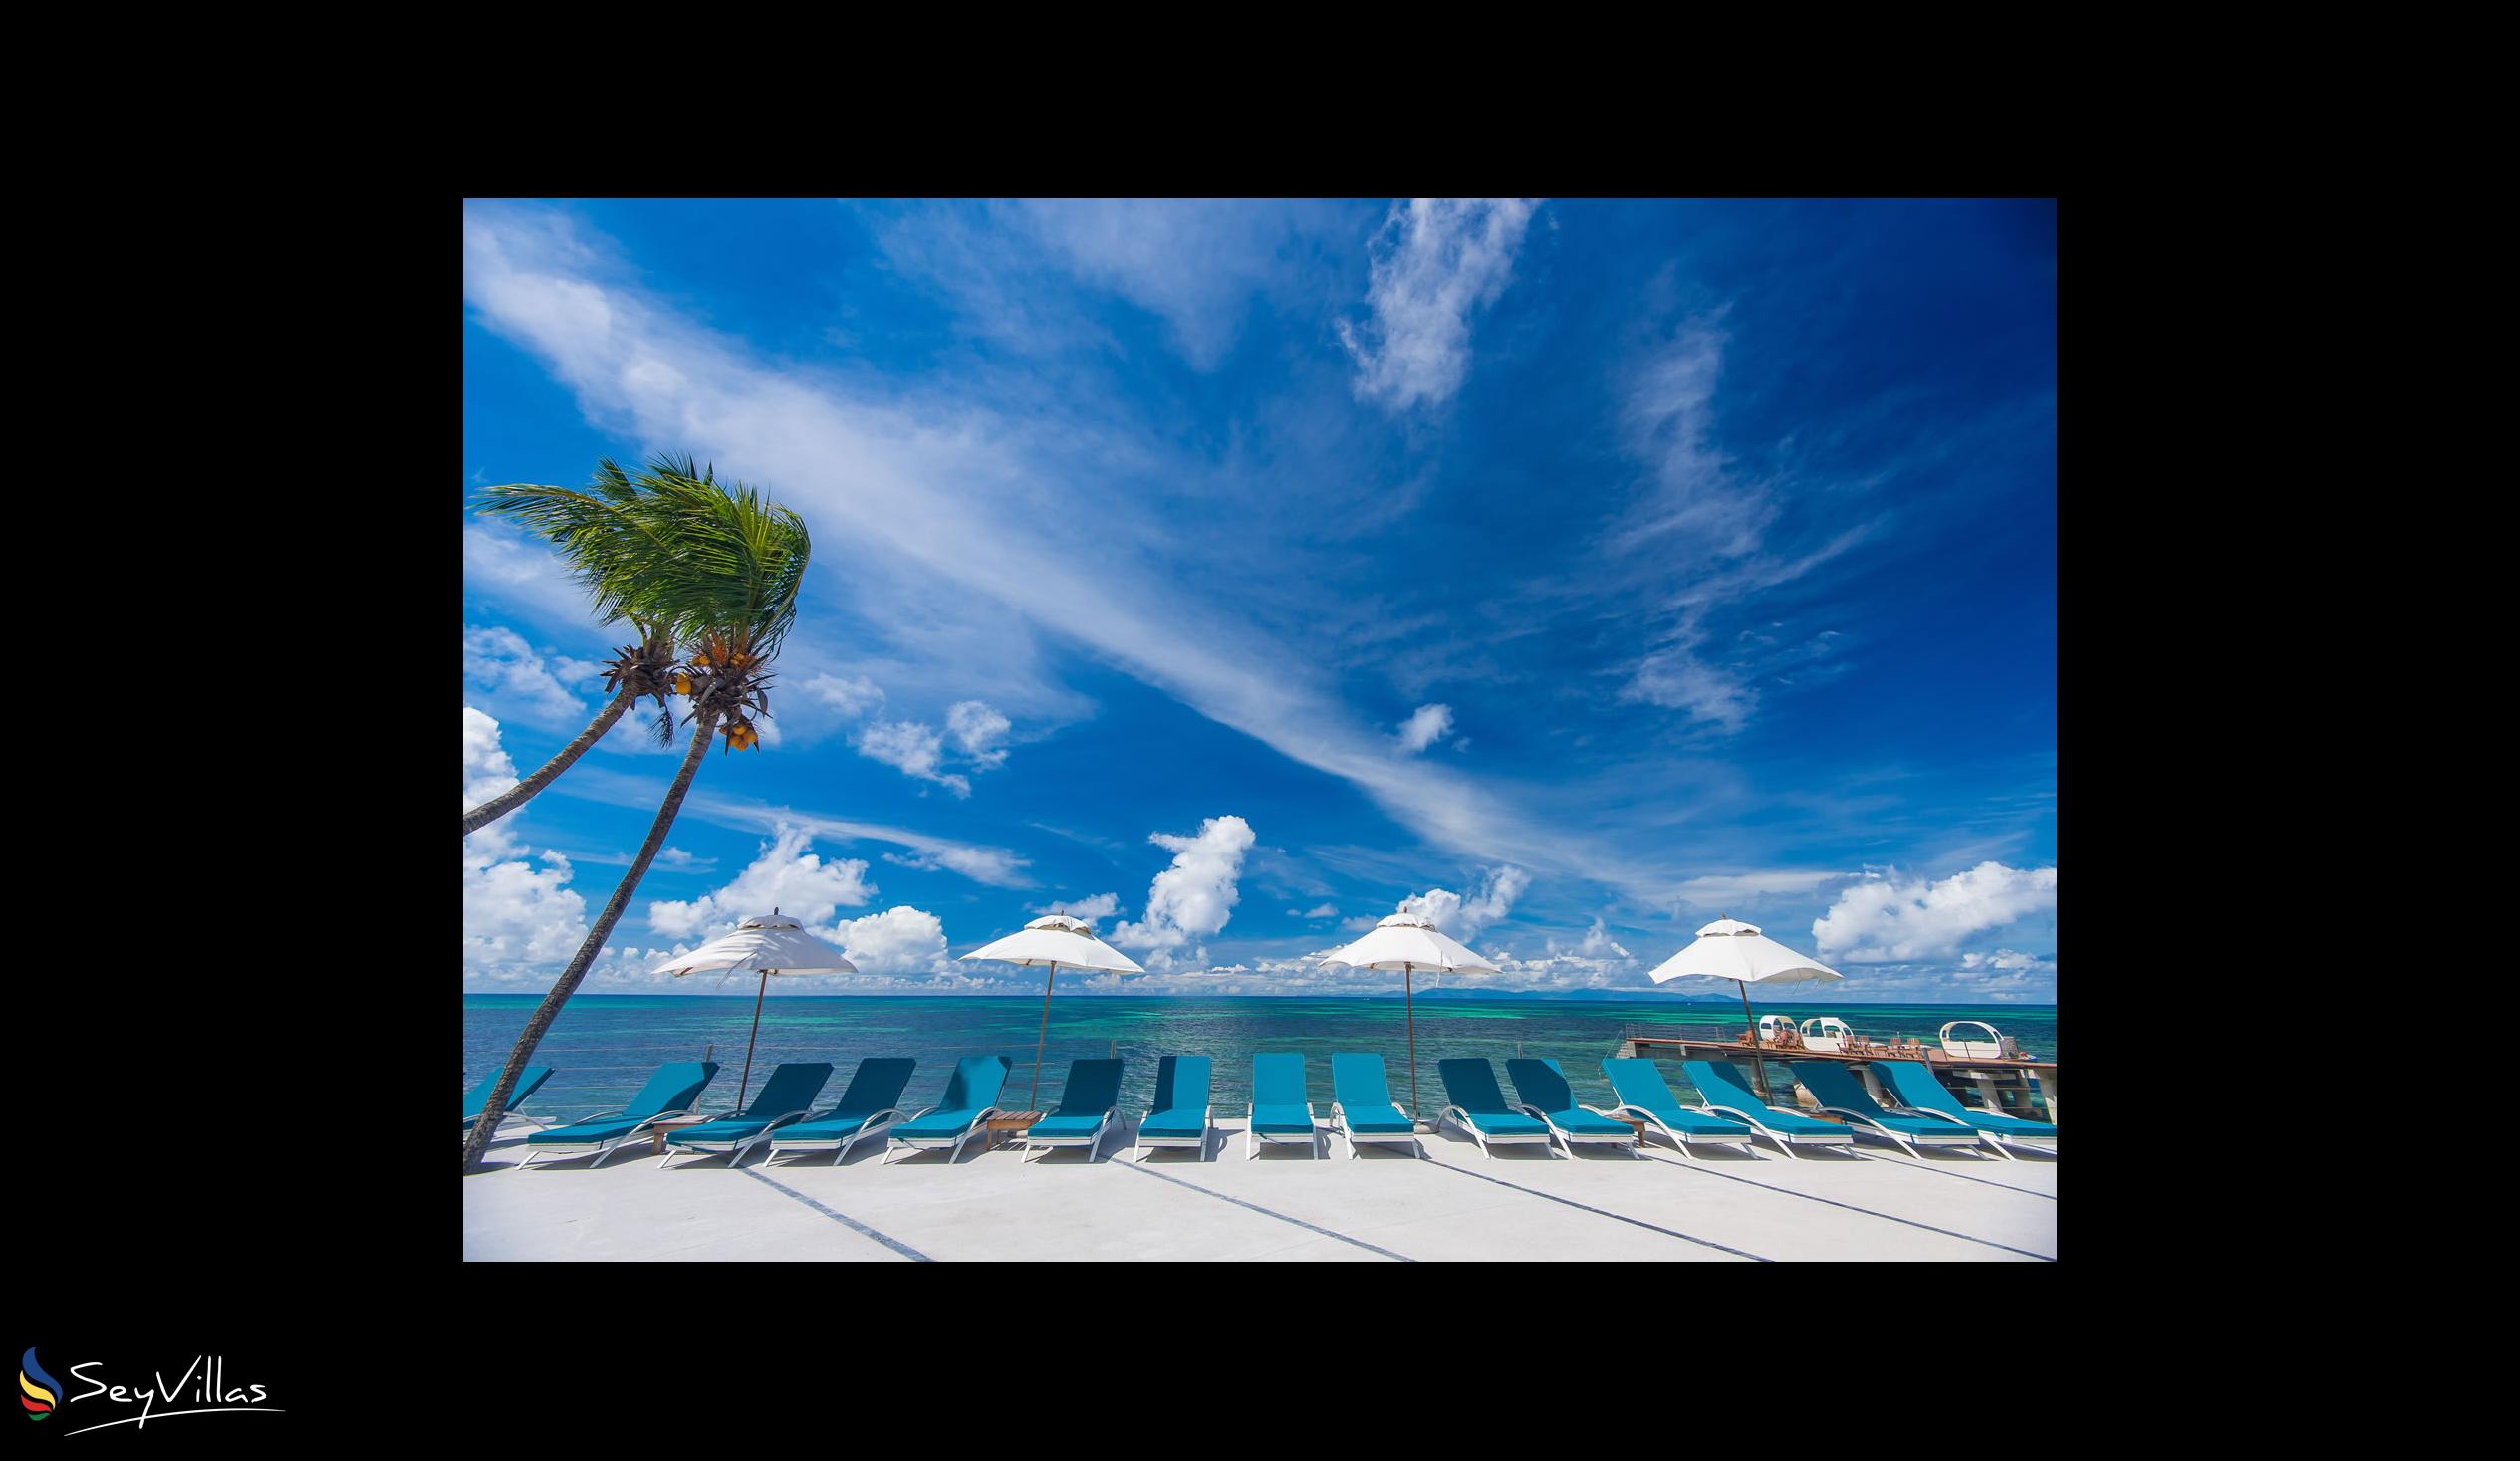 Foto 15: Coco de Mer & Black Parrot Suites - Aussenbereich - Praslin (Seychellen)